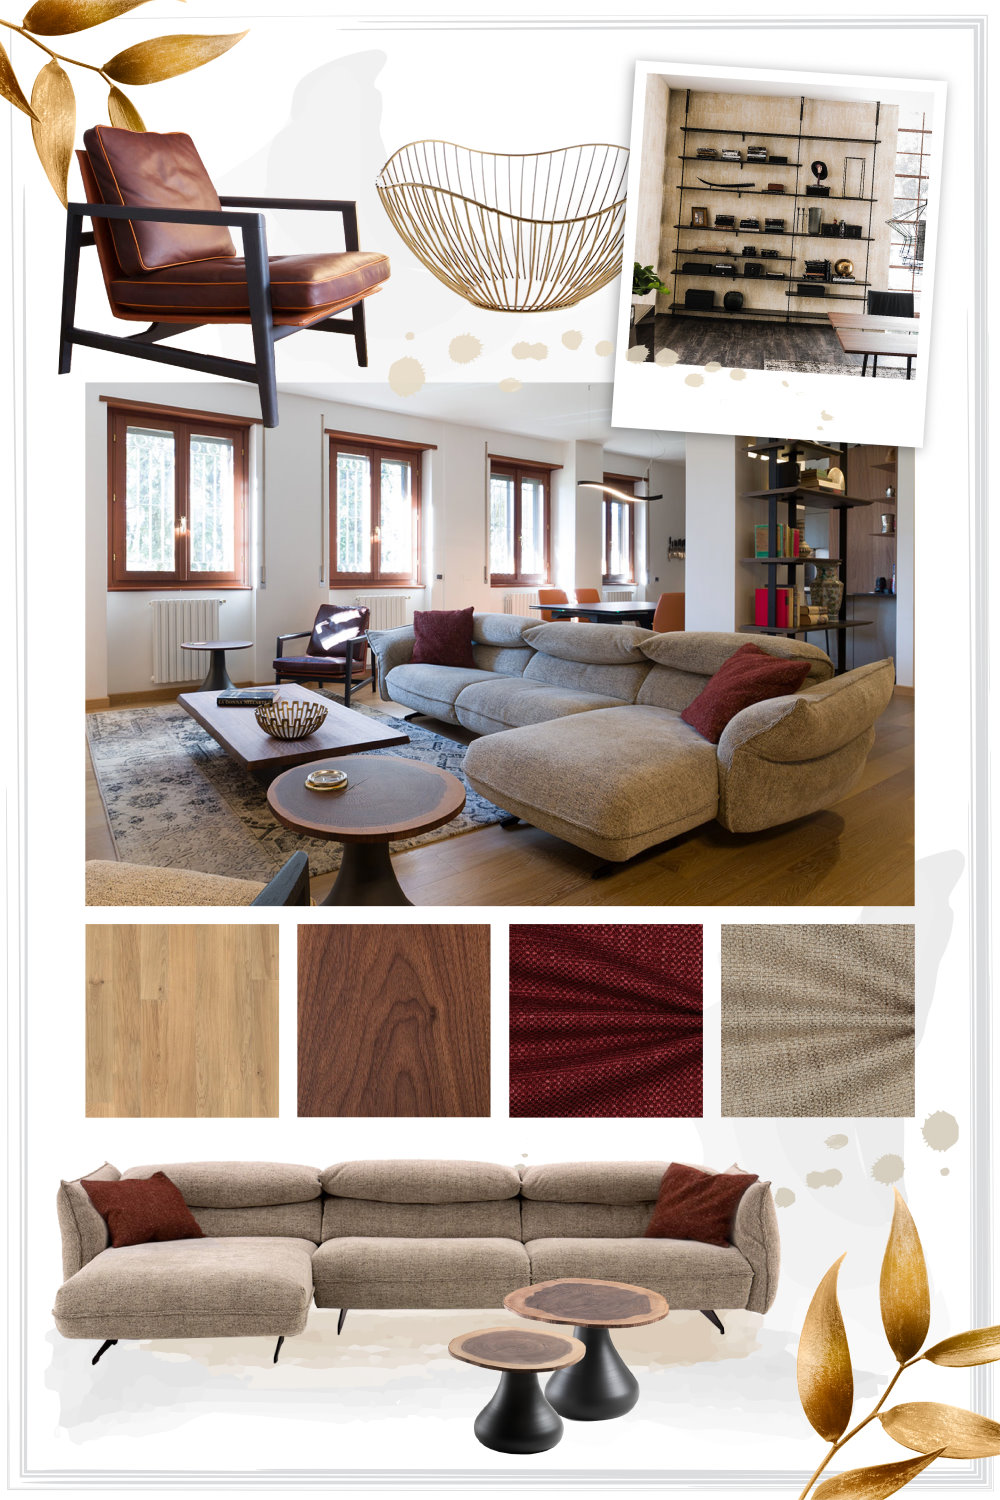 Cuscini decorativi per il tuo divano!  Idee arredamento soggiorno,  Decorazione di appartamenti, Idee per decorare la casa